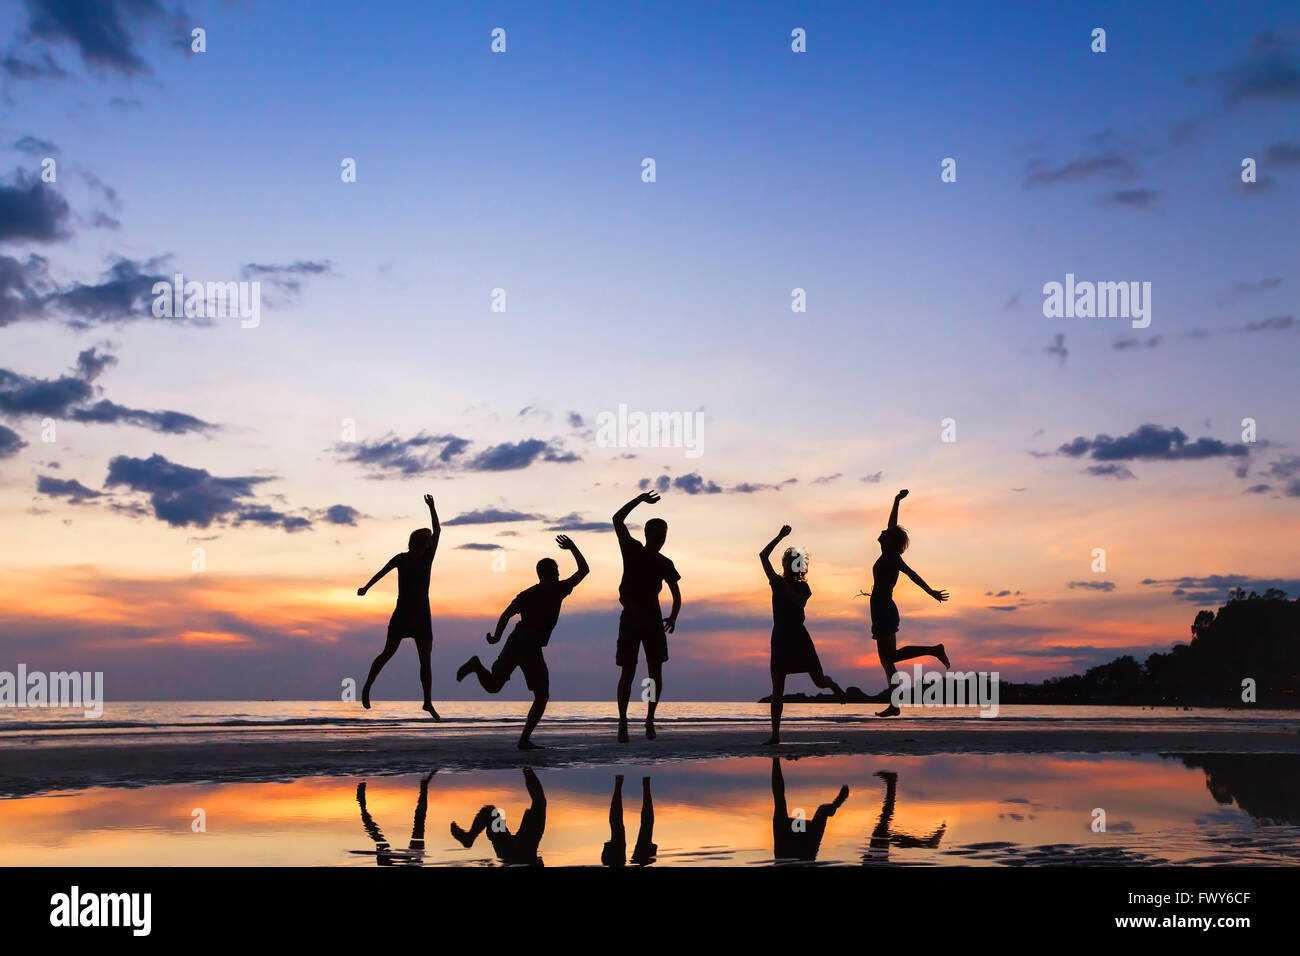 Gruppe von Menschen springen am Strand bei Sonnenuntergang, Silhouette von Freunden gemeinsam Spaß haben Stockfoto